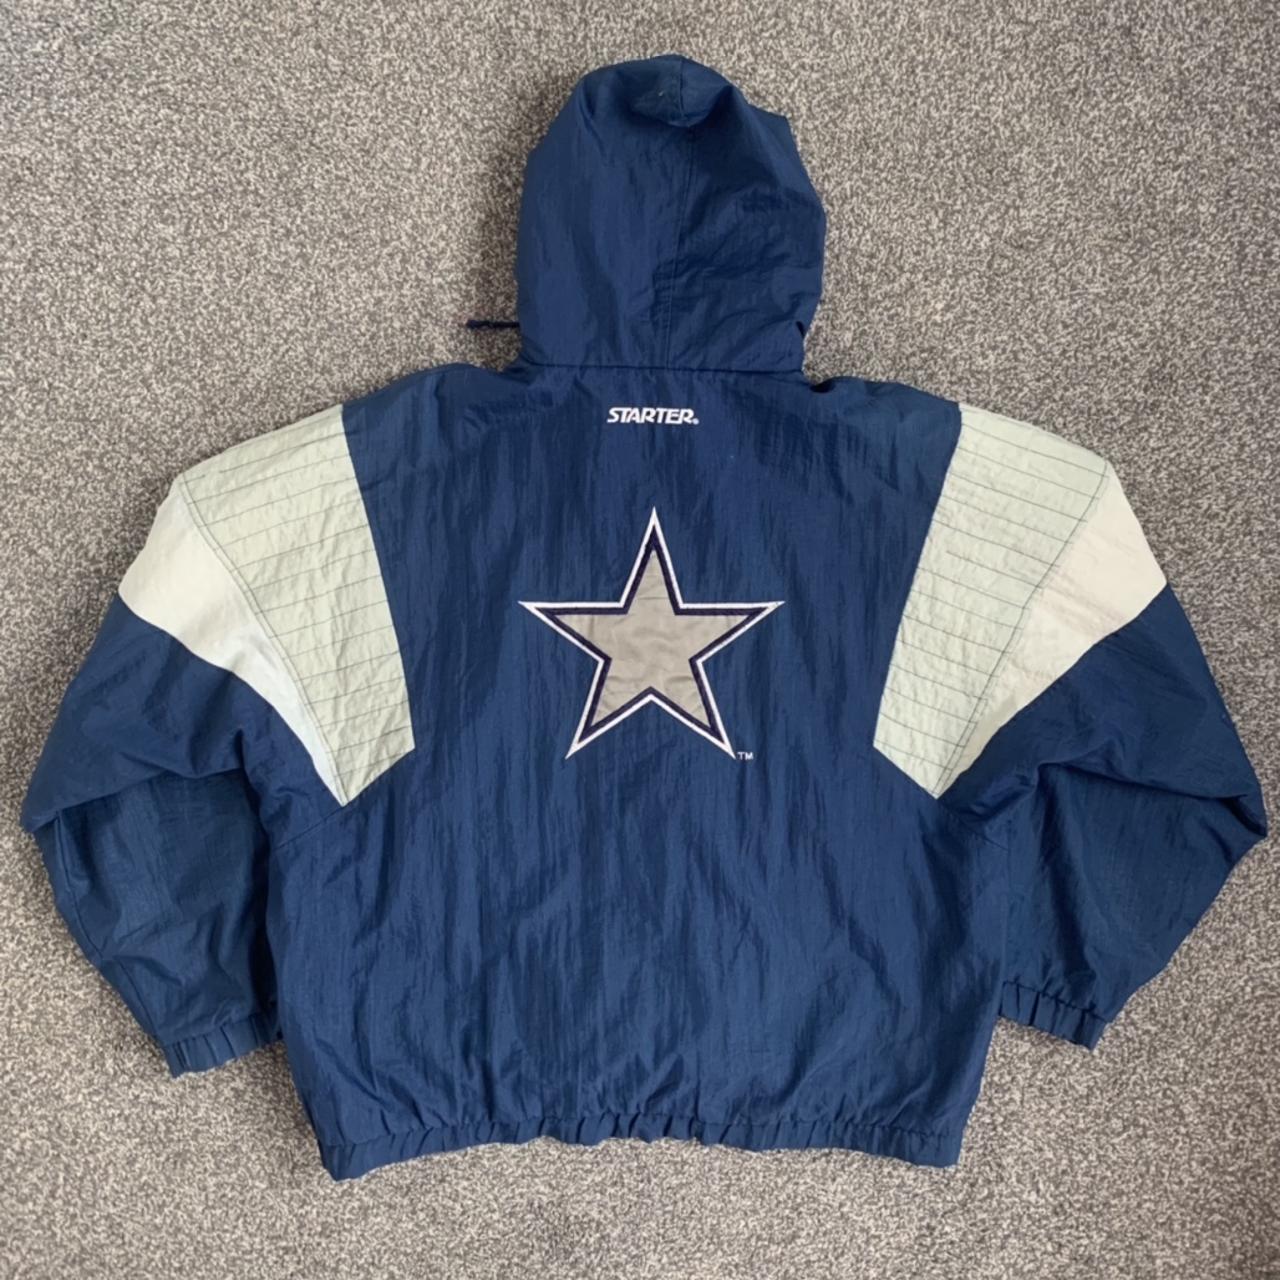 Vintage Dallas Cowboys NFL Starter jacket American... - Depop